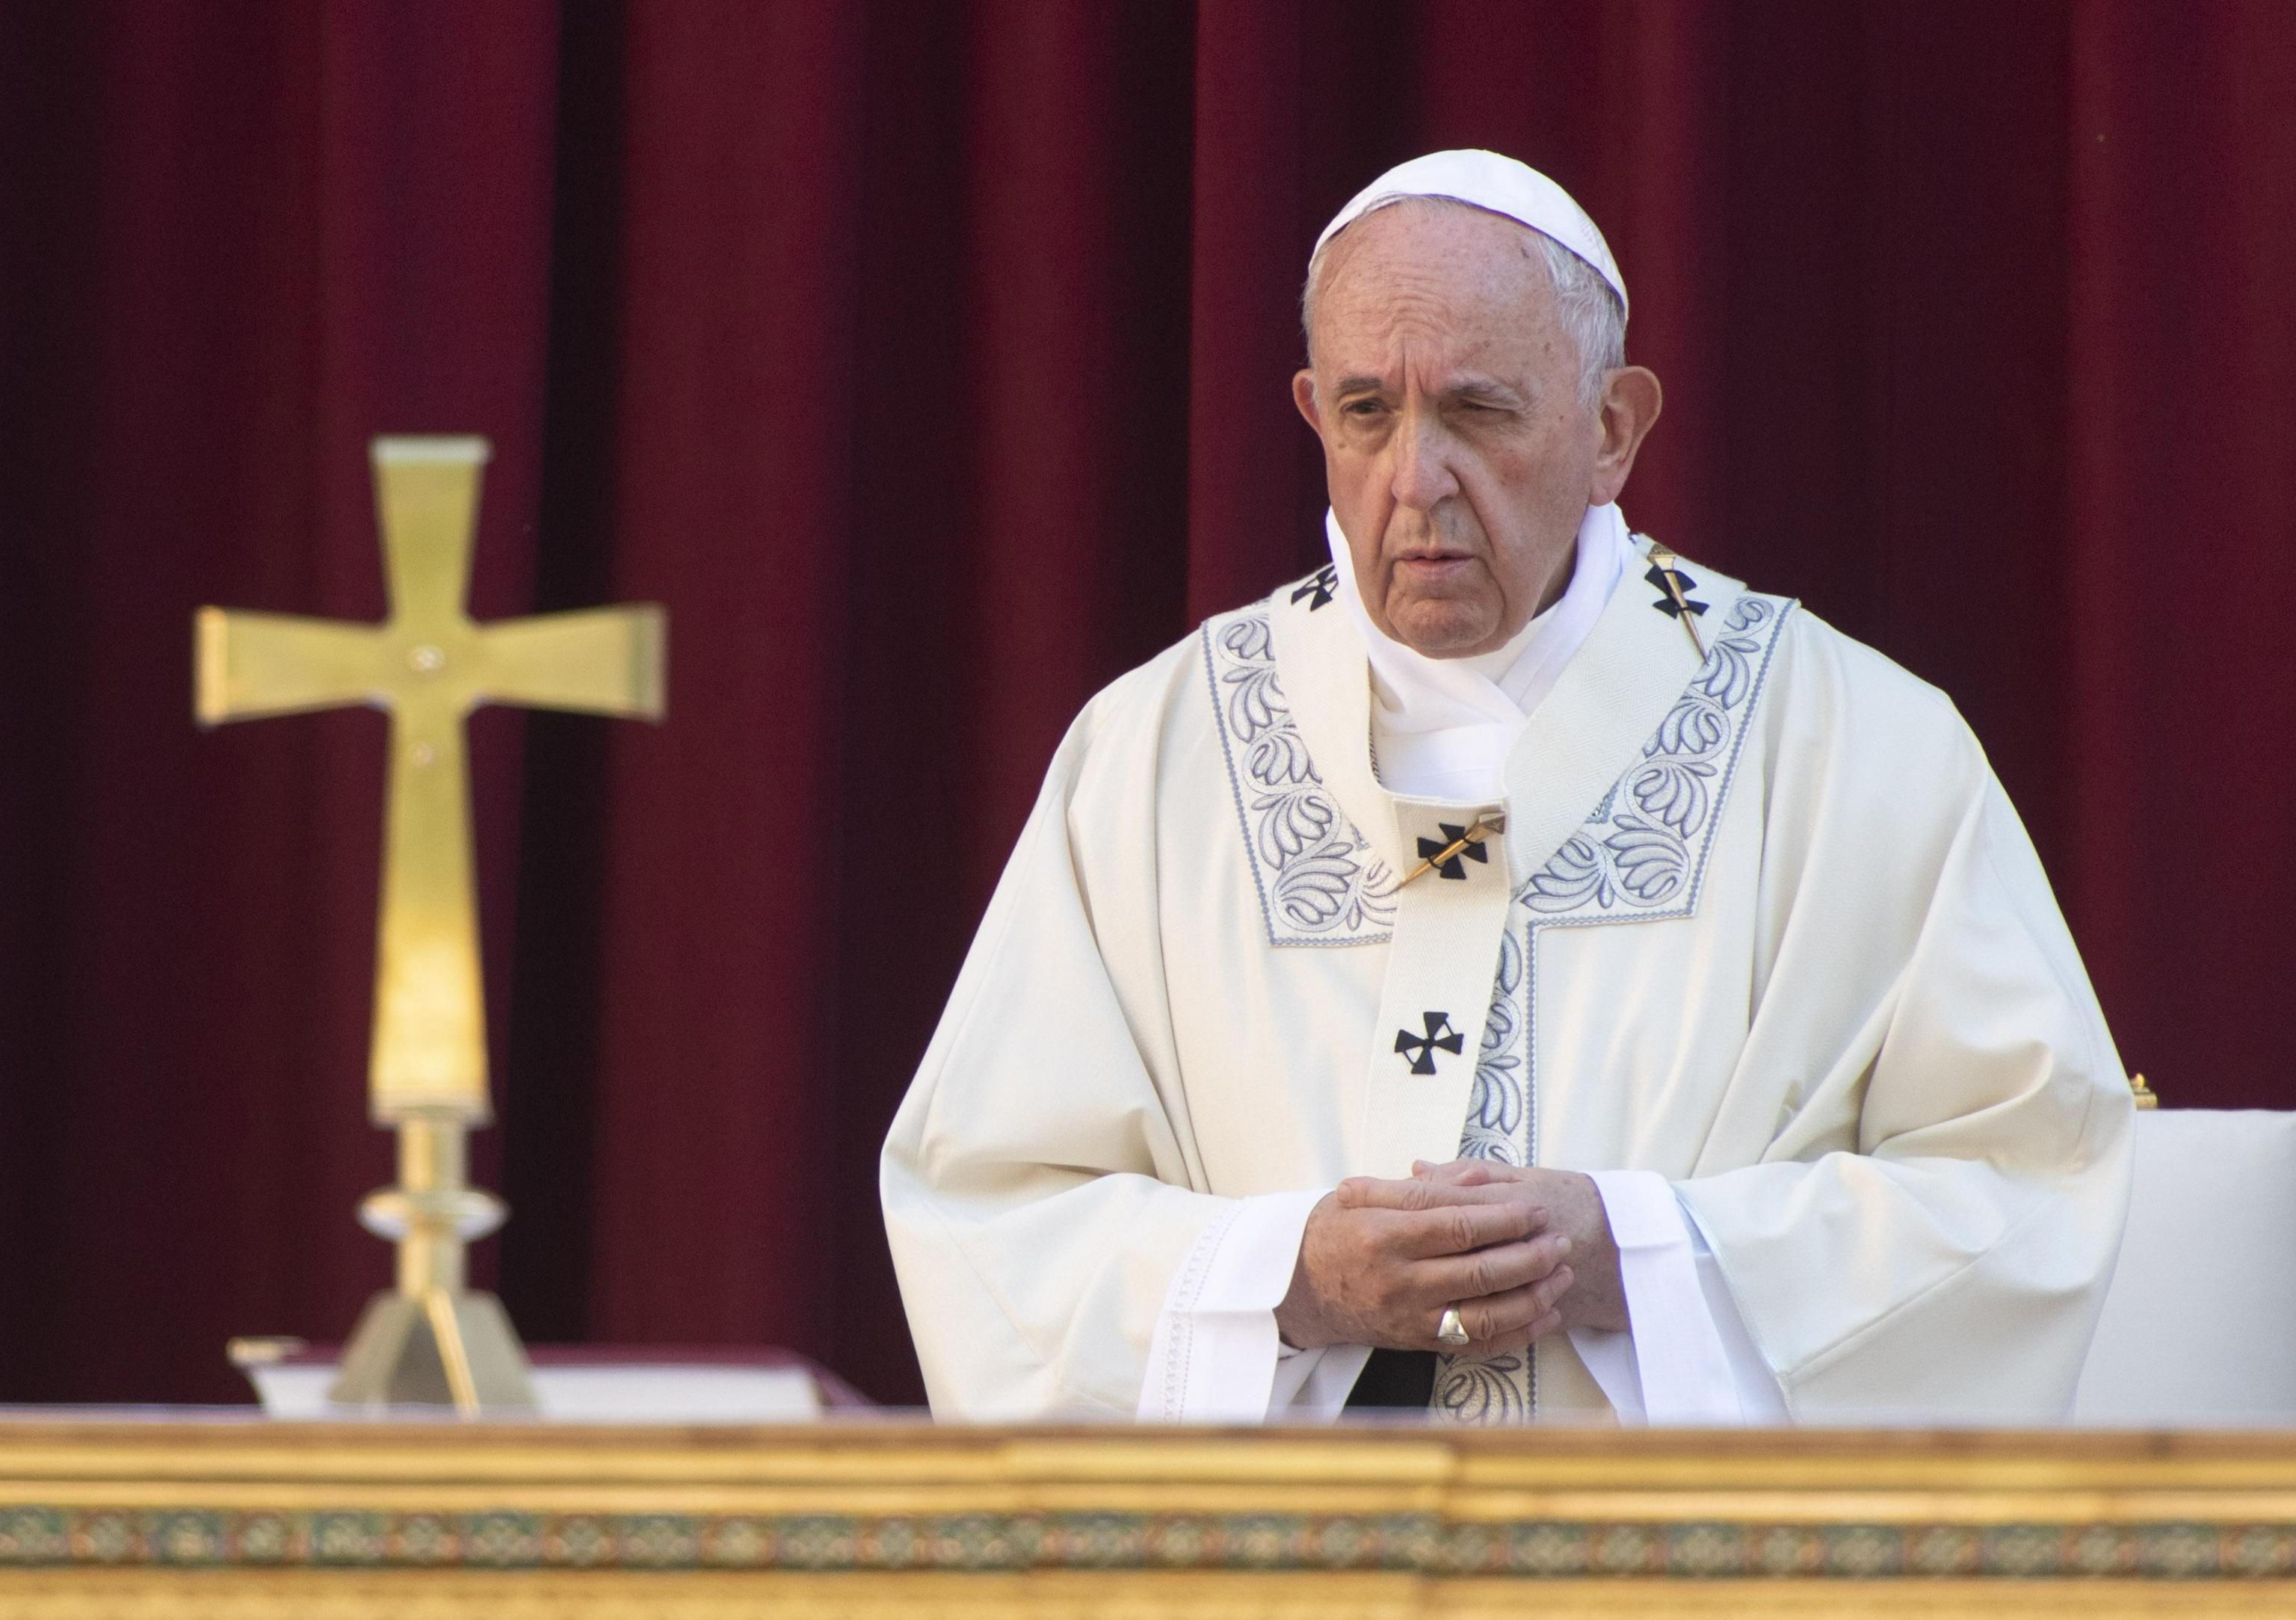 El Papa critica la arrogancia, la ambición y defiende el compartir